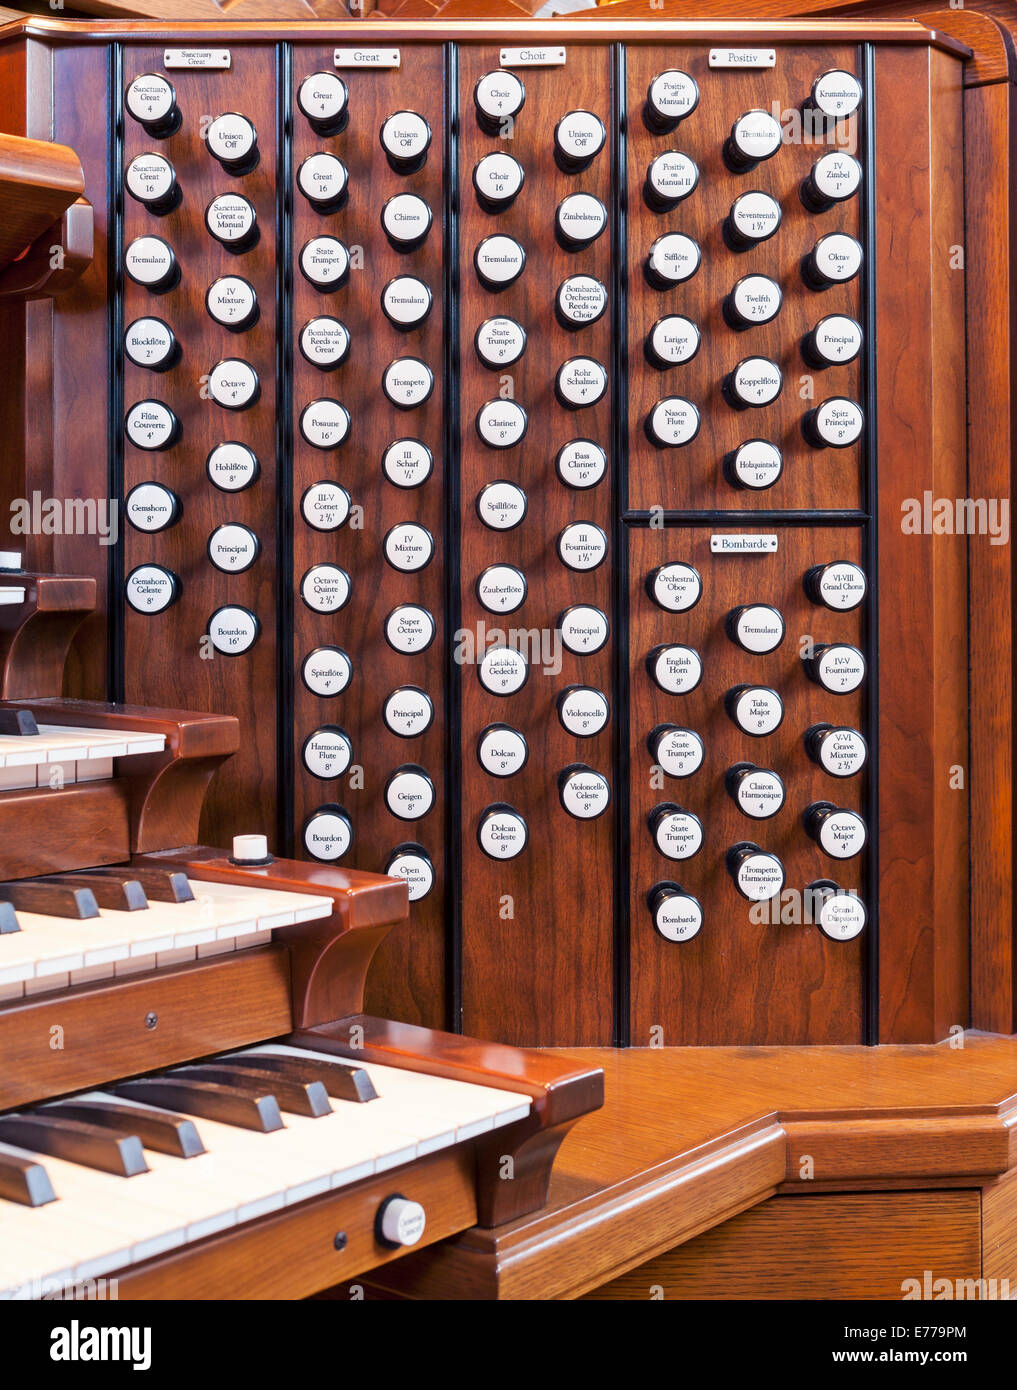 L'arrête sur un orgue dans une église. Banque D'Images